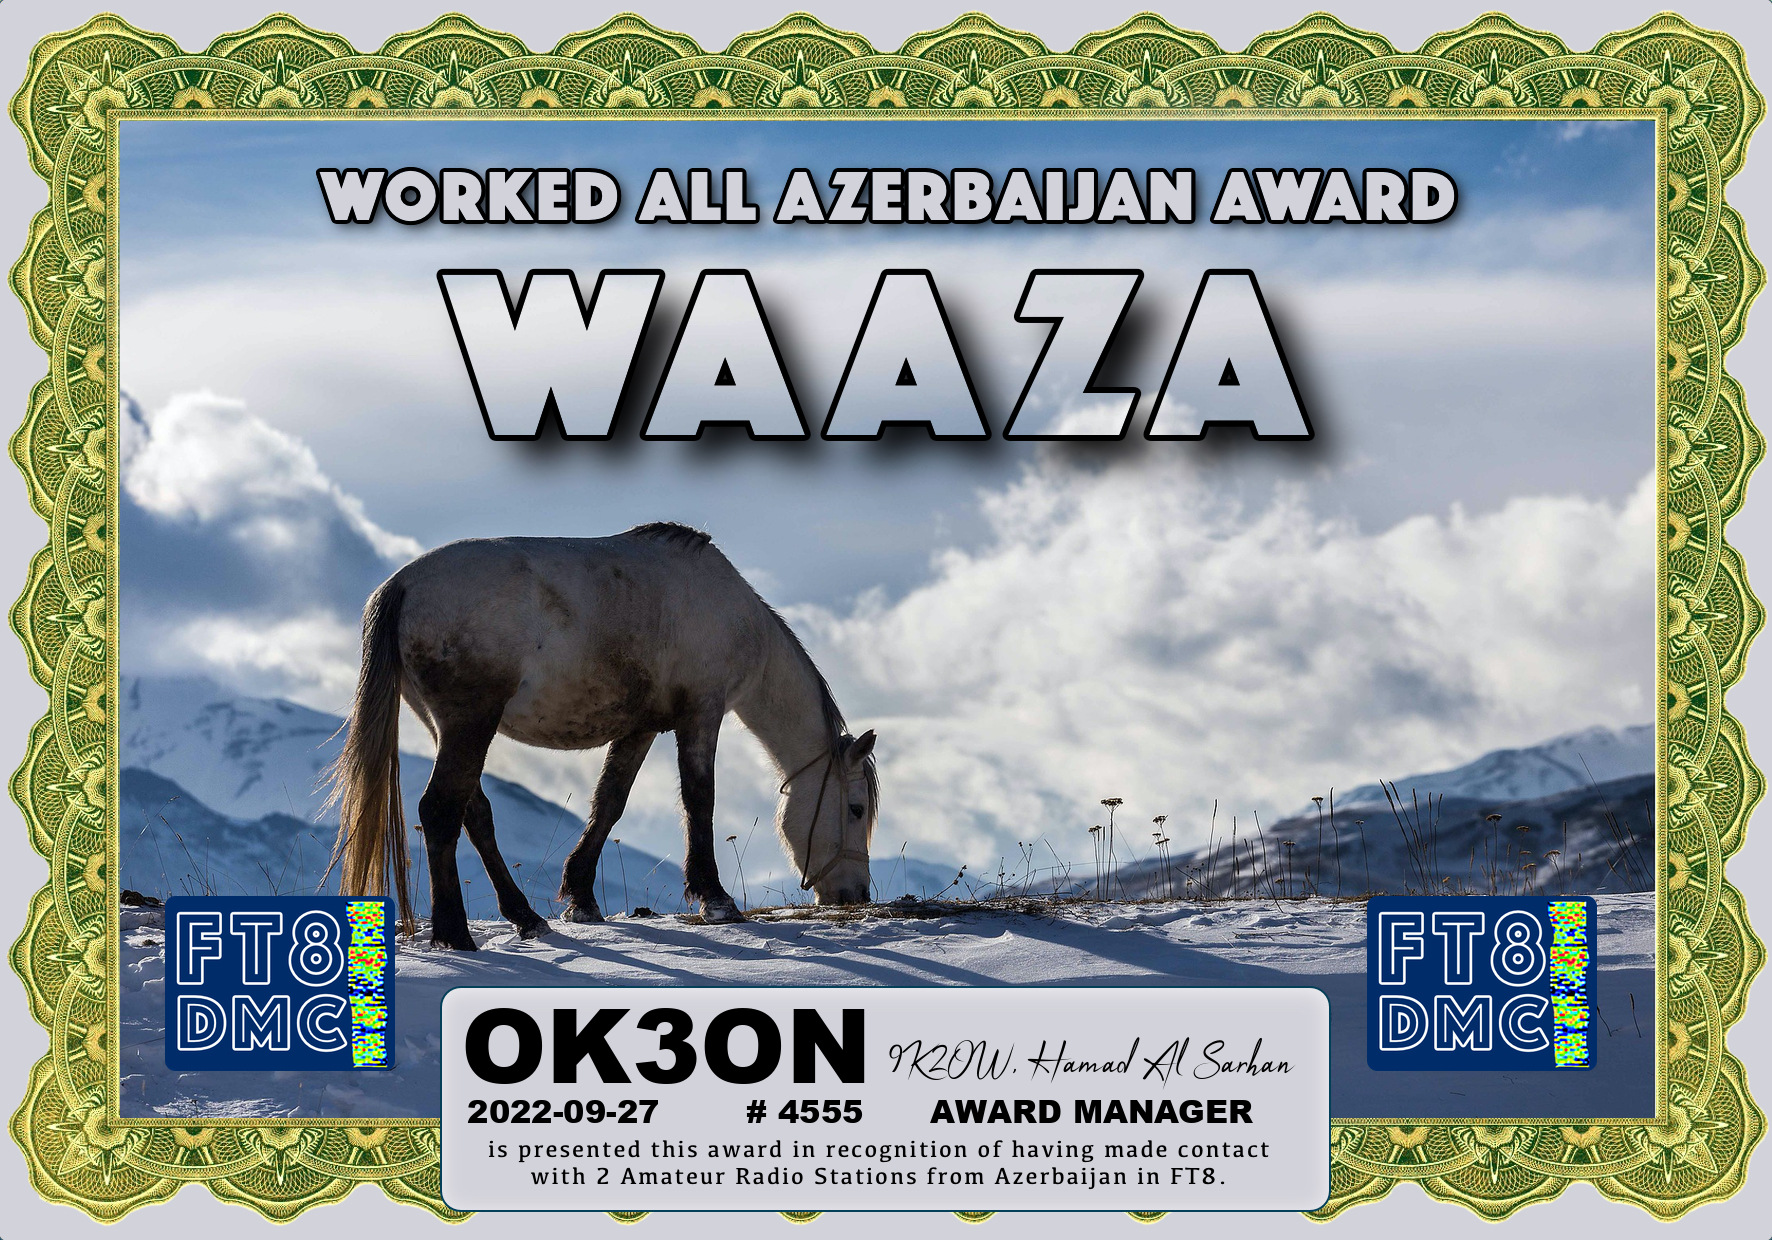 awards/OK3ON-WAAZA-WAAZA_FT8DMC.jpg